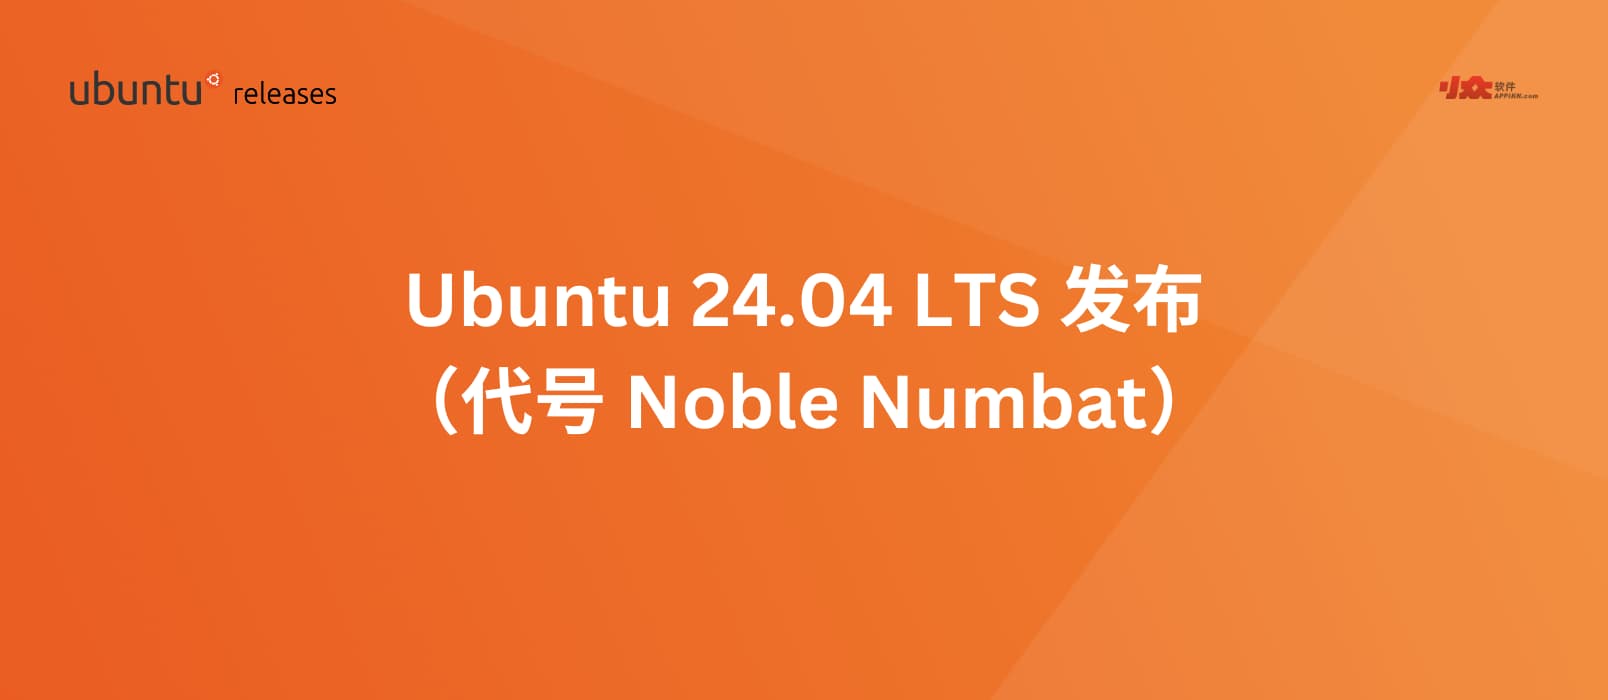 Ubuntu 24.04 LTS（代号“Noble Numbat”）已发布 10